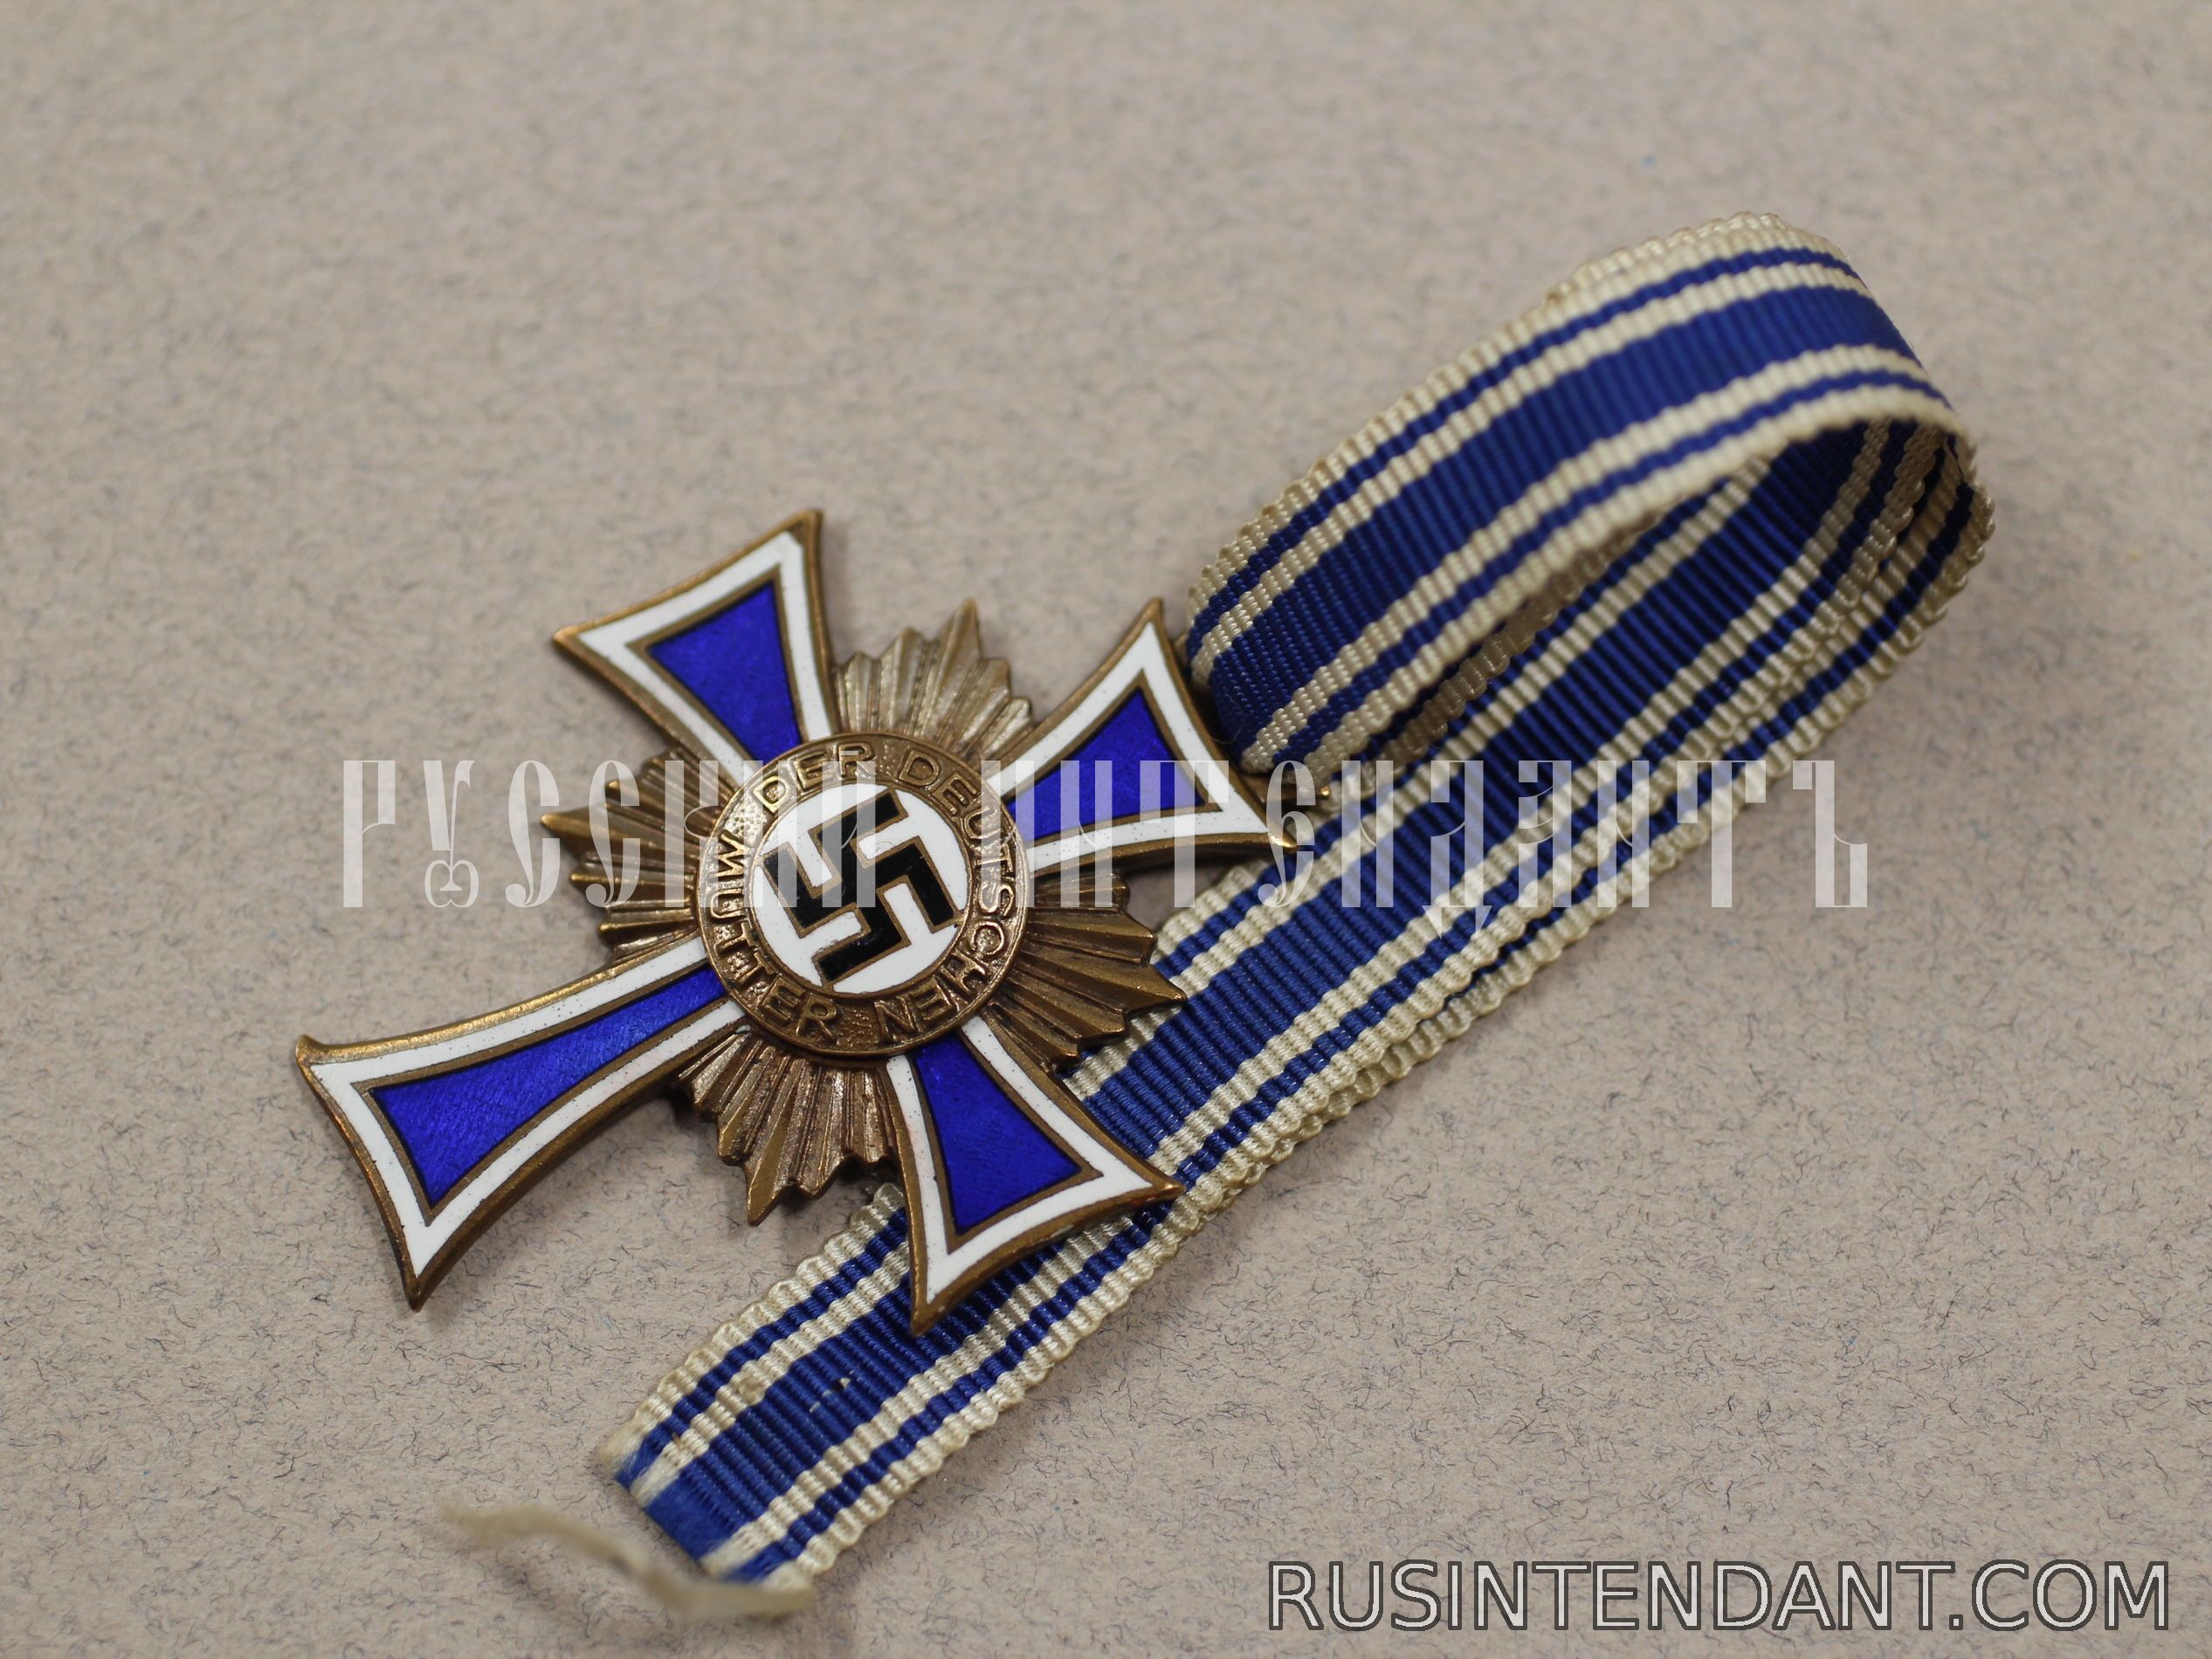 Фото 3: Почетный крест Немецкой матери "Бронзовый" 